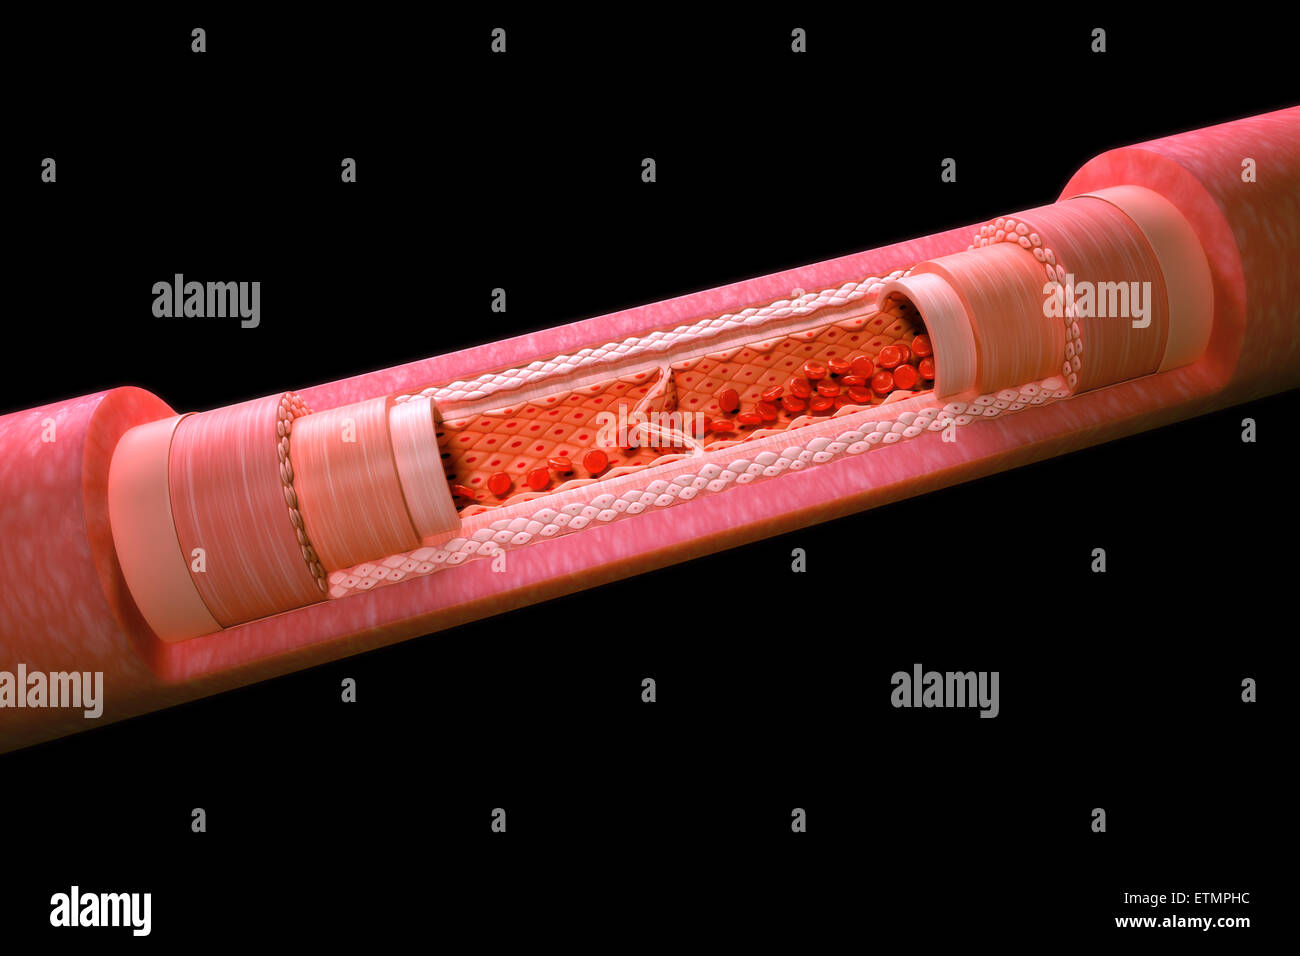 Ilustración mostrando una vena con una sección transversal para revelar la anatomía interna, incluidas las válvulas y el flujo sanguíneo. Foto de stock